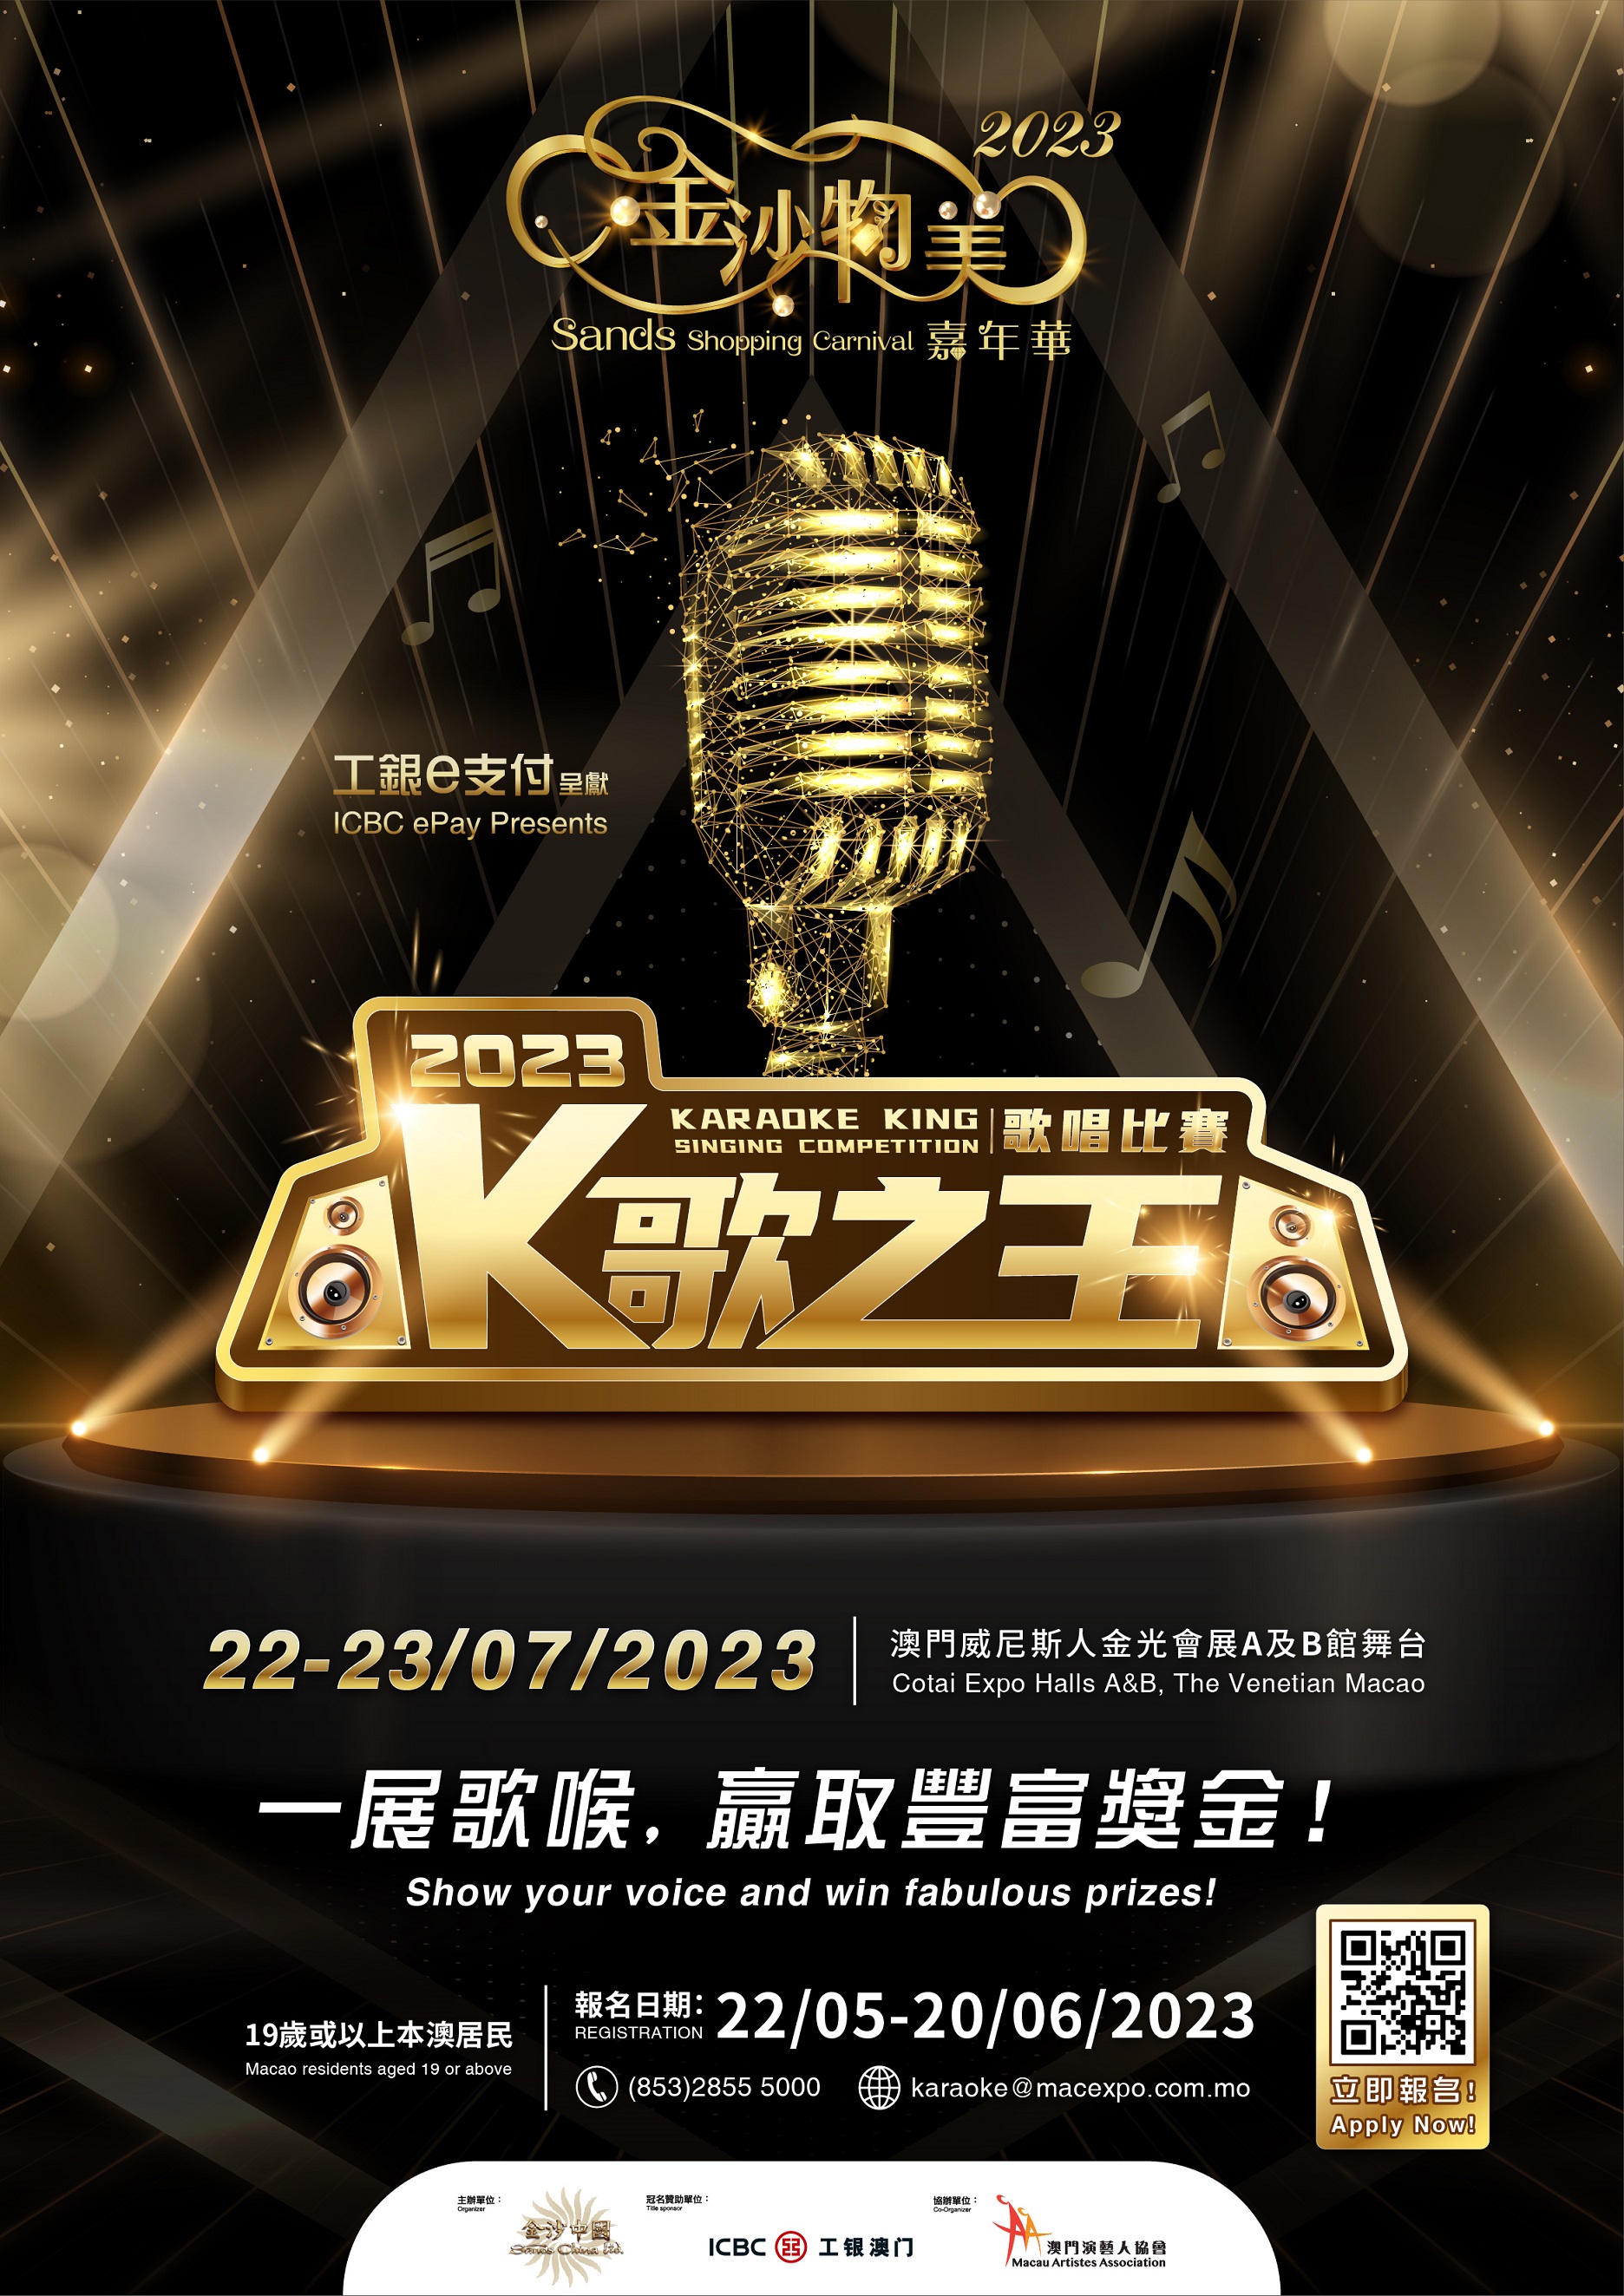 Karaoke King Singing Competition - Poster Final (resized).jpg